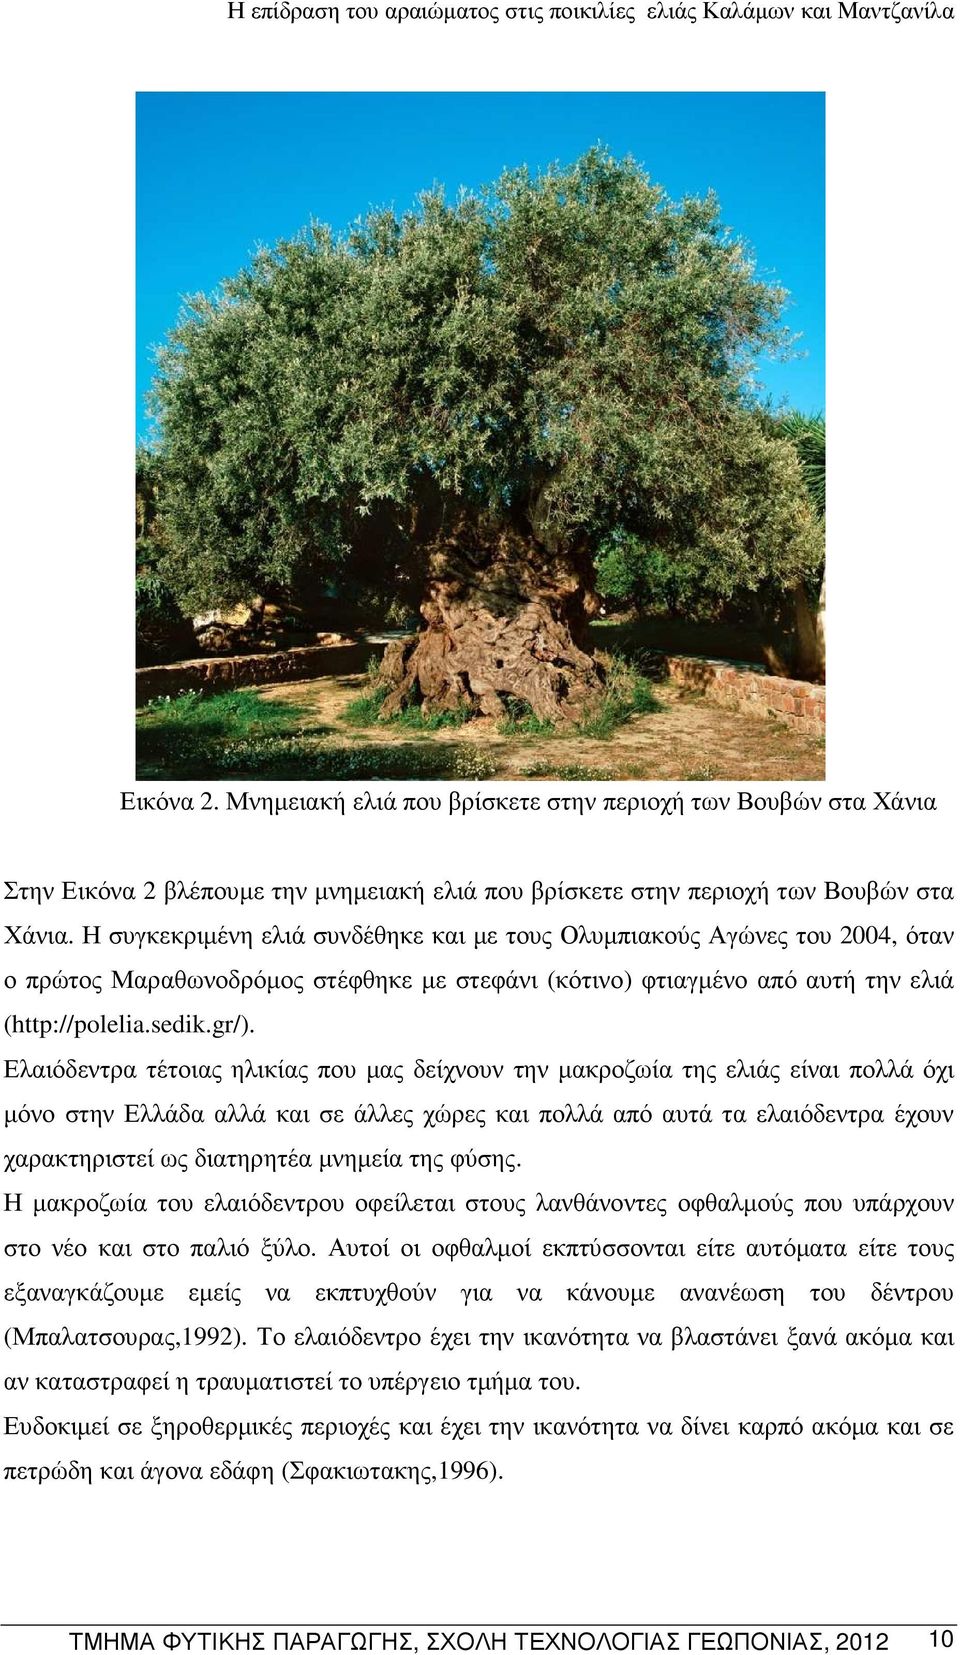 Ελαιόδεντρα τέτοιας ηλικίας που µας δείχνουν την µακροζωία της ελιάς είναι πολλά όχι µόνο στην Ελλάδα αλλά και σε άλλες χώρες και πολλά από αυτά τα ελαιόδεντρα έχουν χαρακτηριστεί ως διατηρητέα